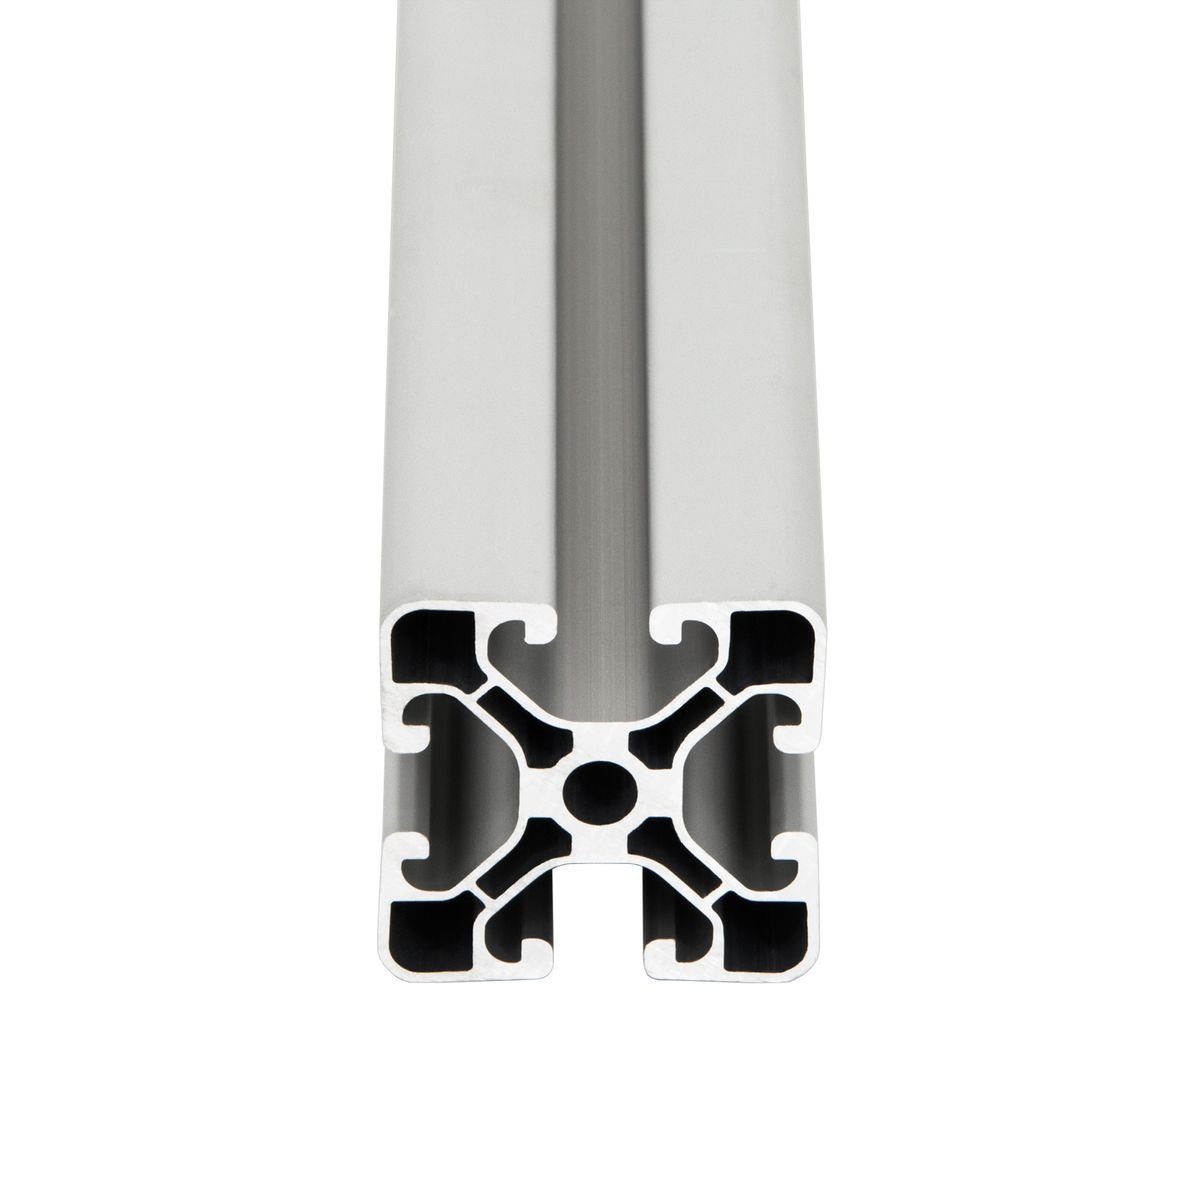 SCHMIDT systemprofile Profil 1600mm Aluminium 40x40 mm Nut 8 Strebenprofil  eloxiert 4040 Alu Konstruktionsprofil Aluprofil